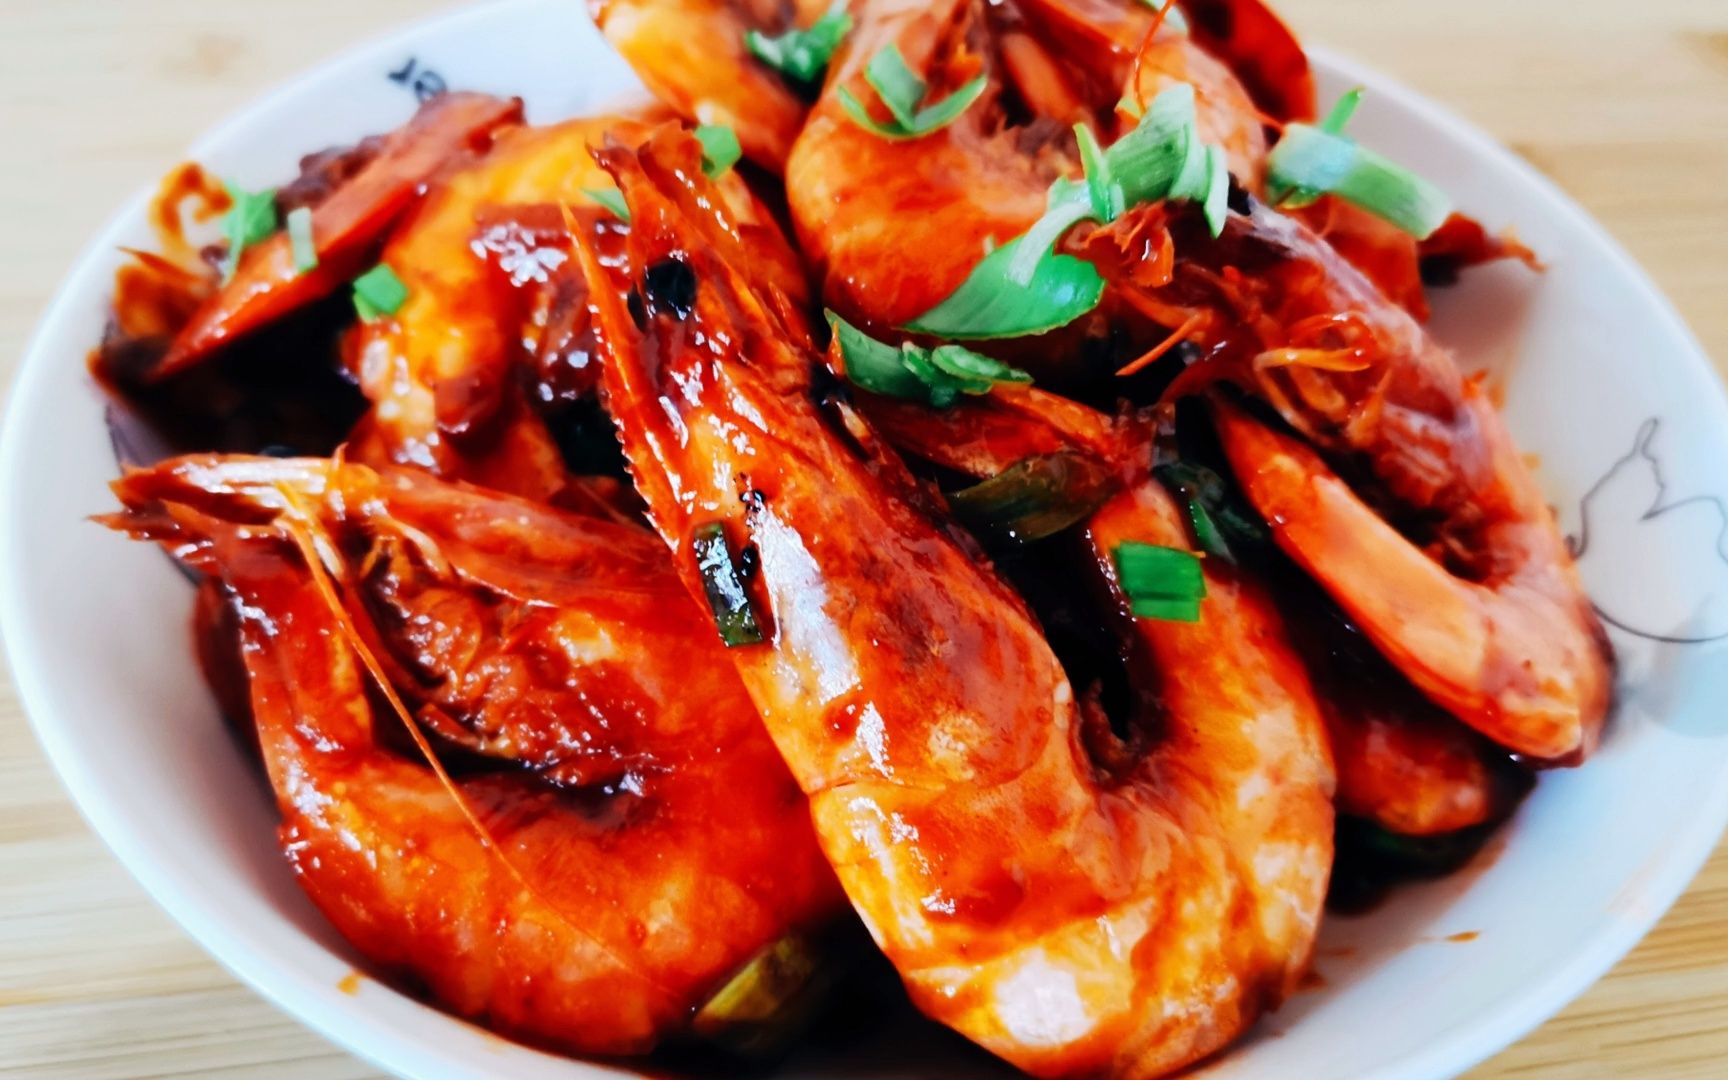 家常版油焖大虾,做法简单,色泽诱人,鲜香入味,超级好吃!